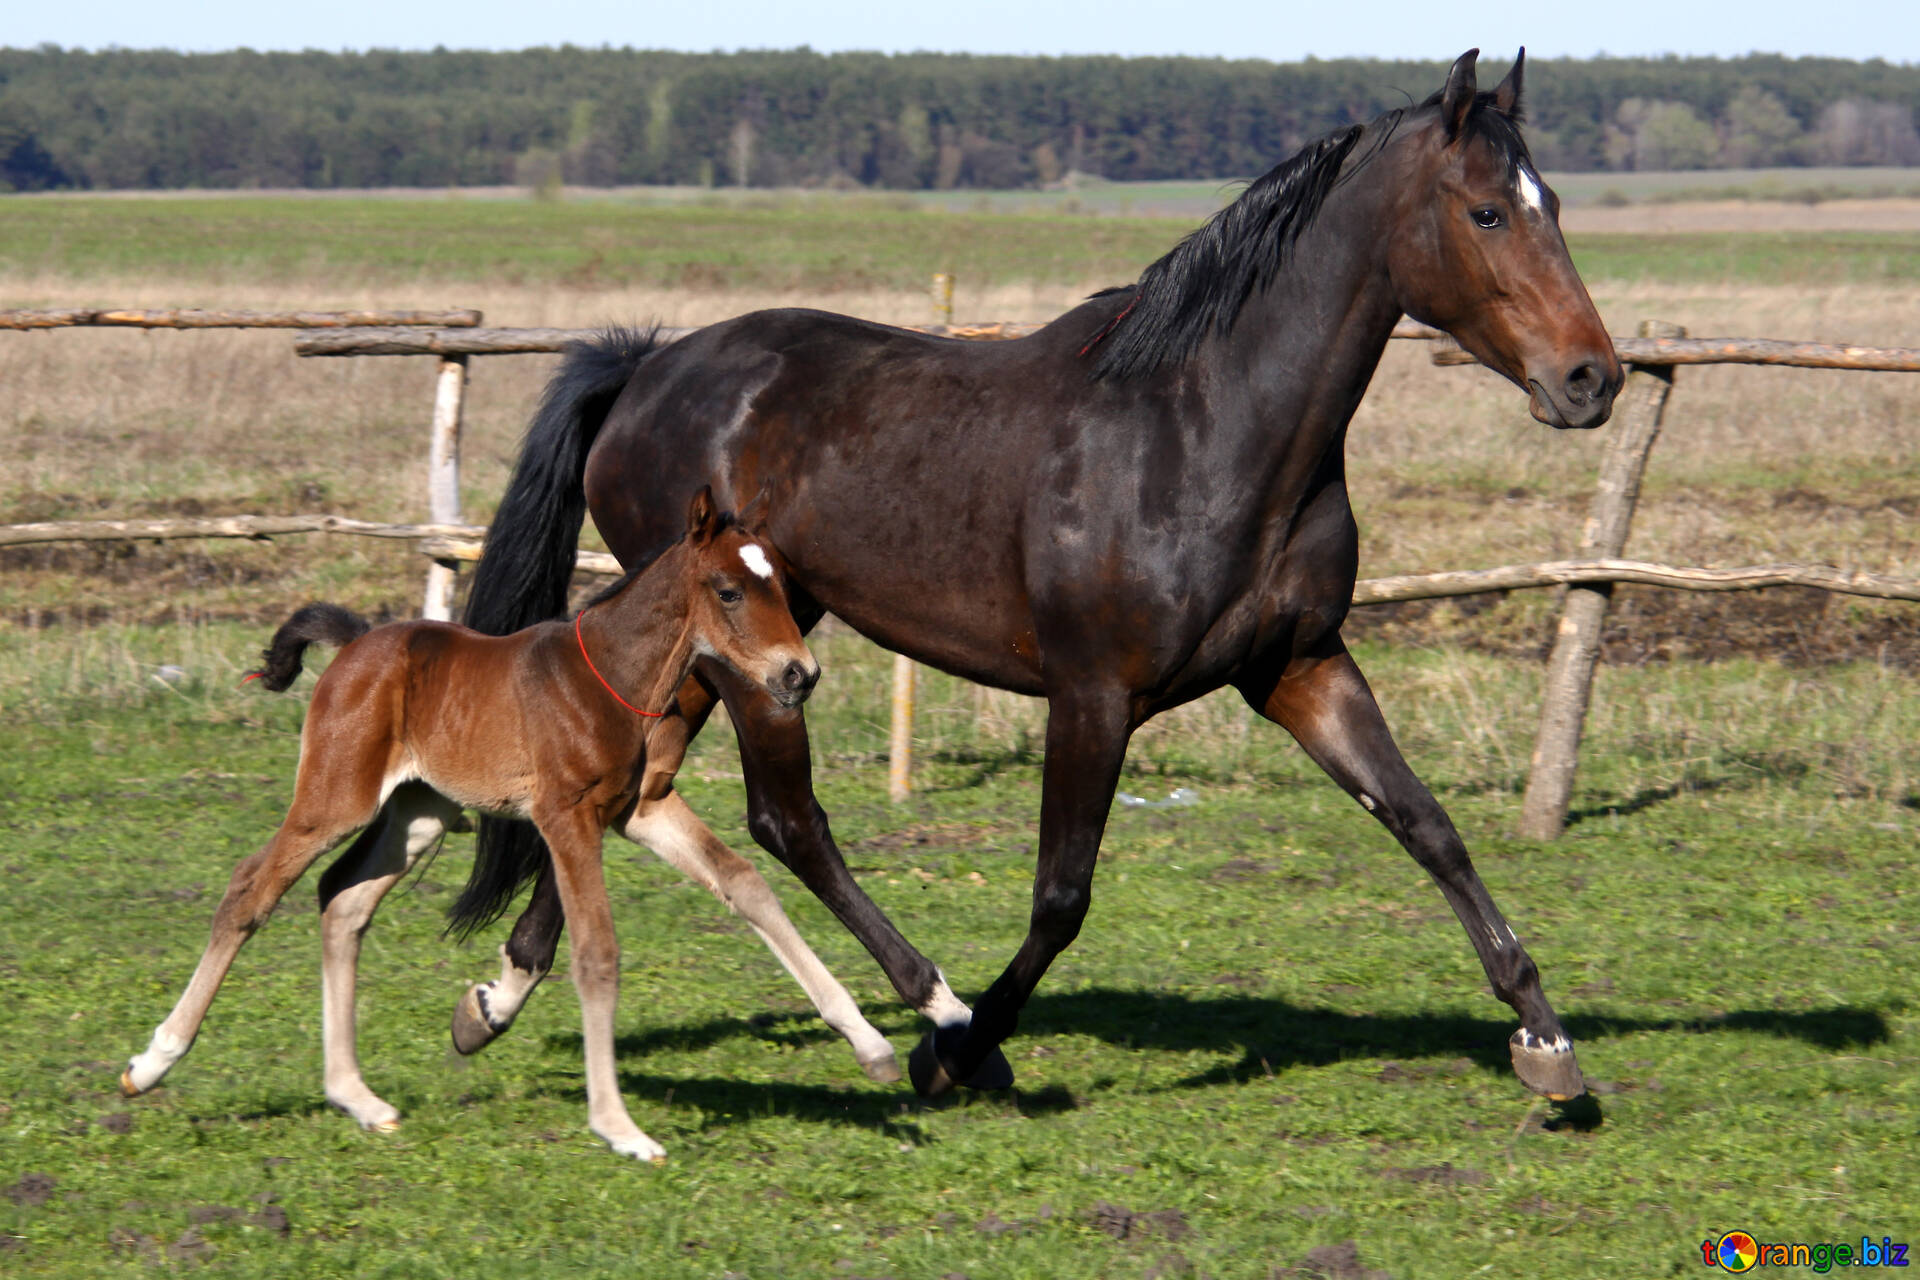 la madre con el bebé yegua caballo #3383.